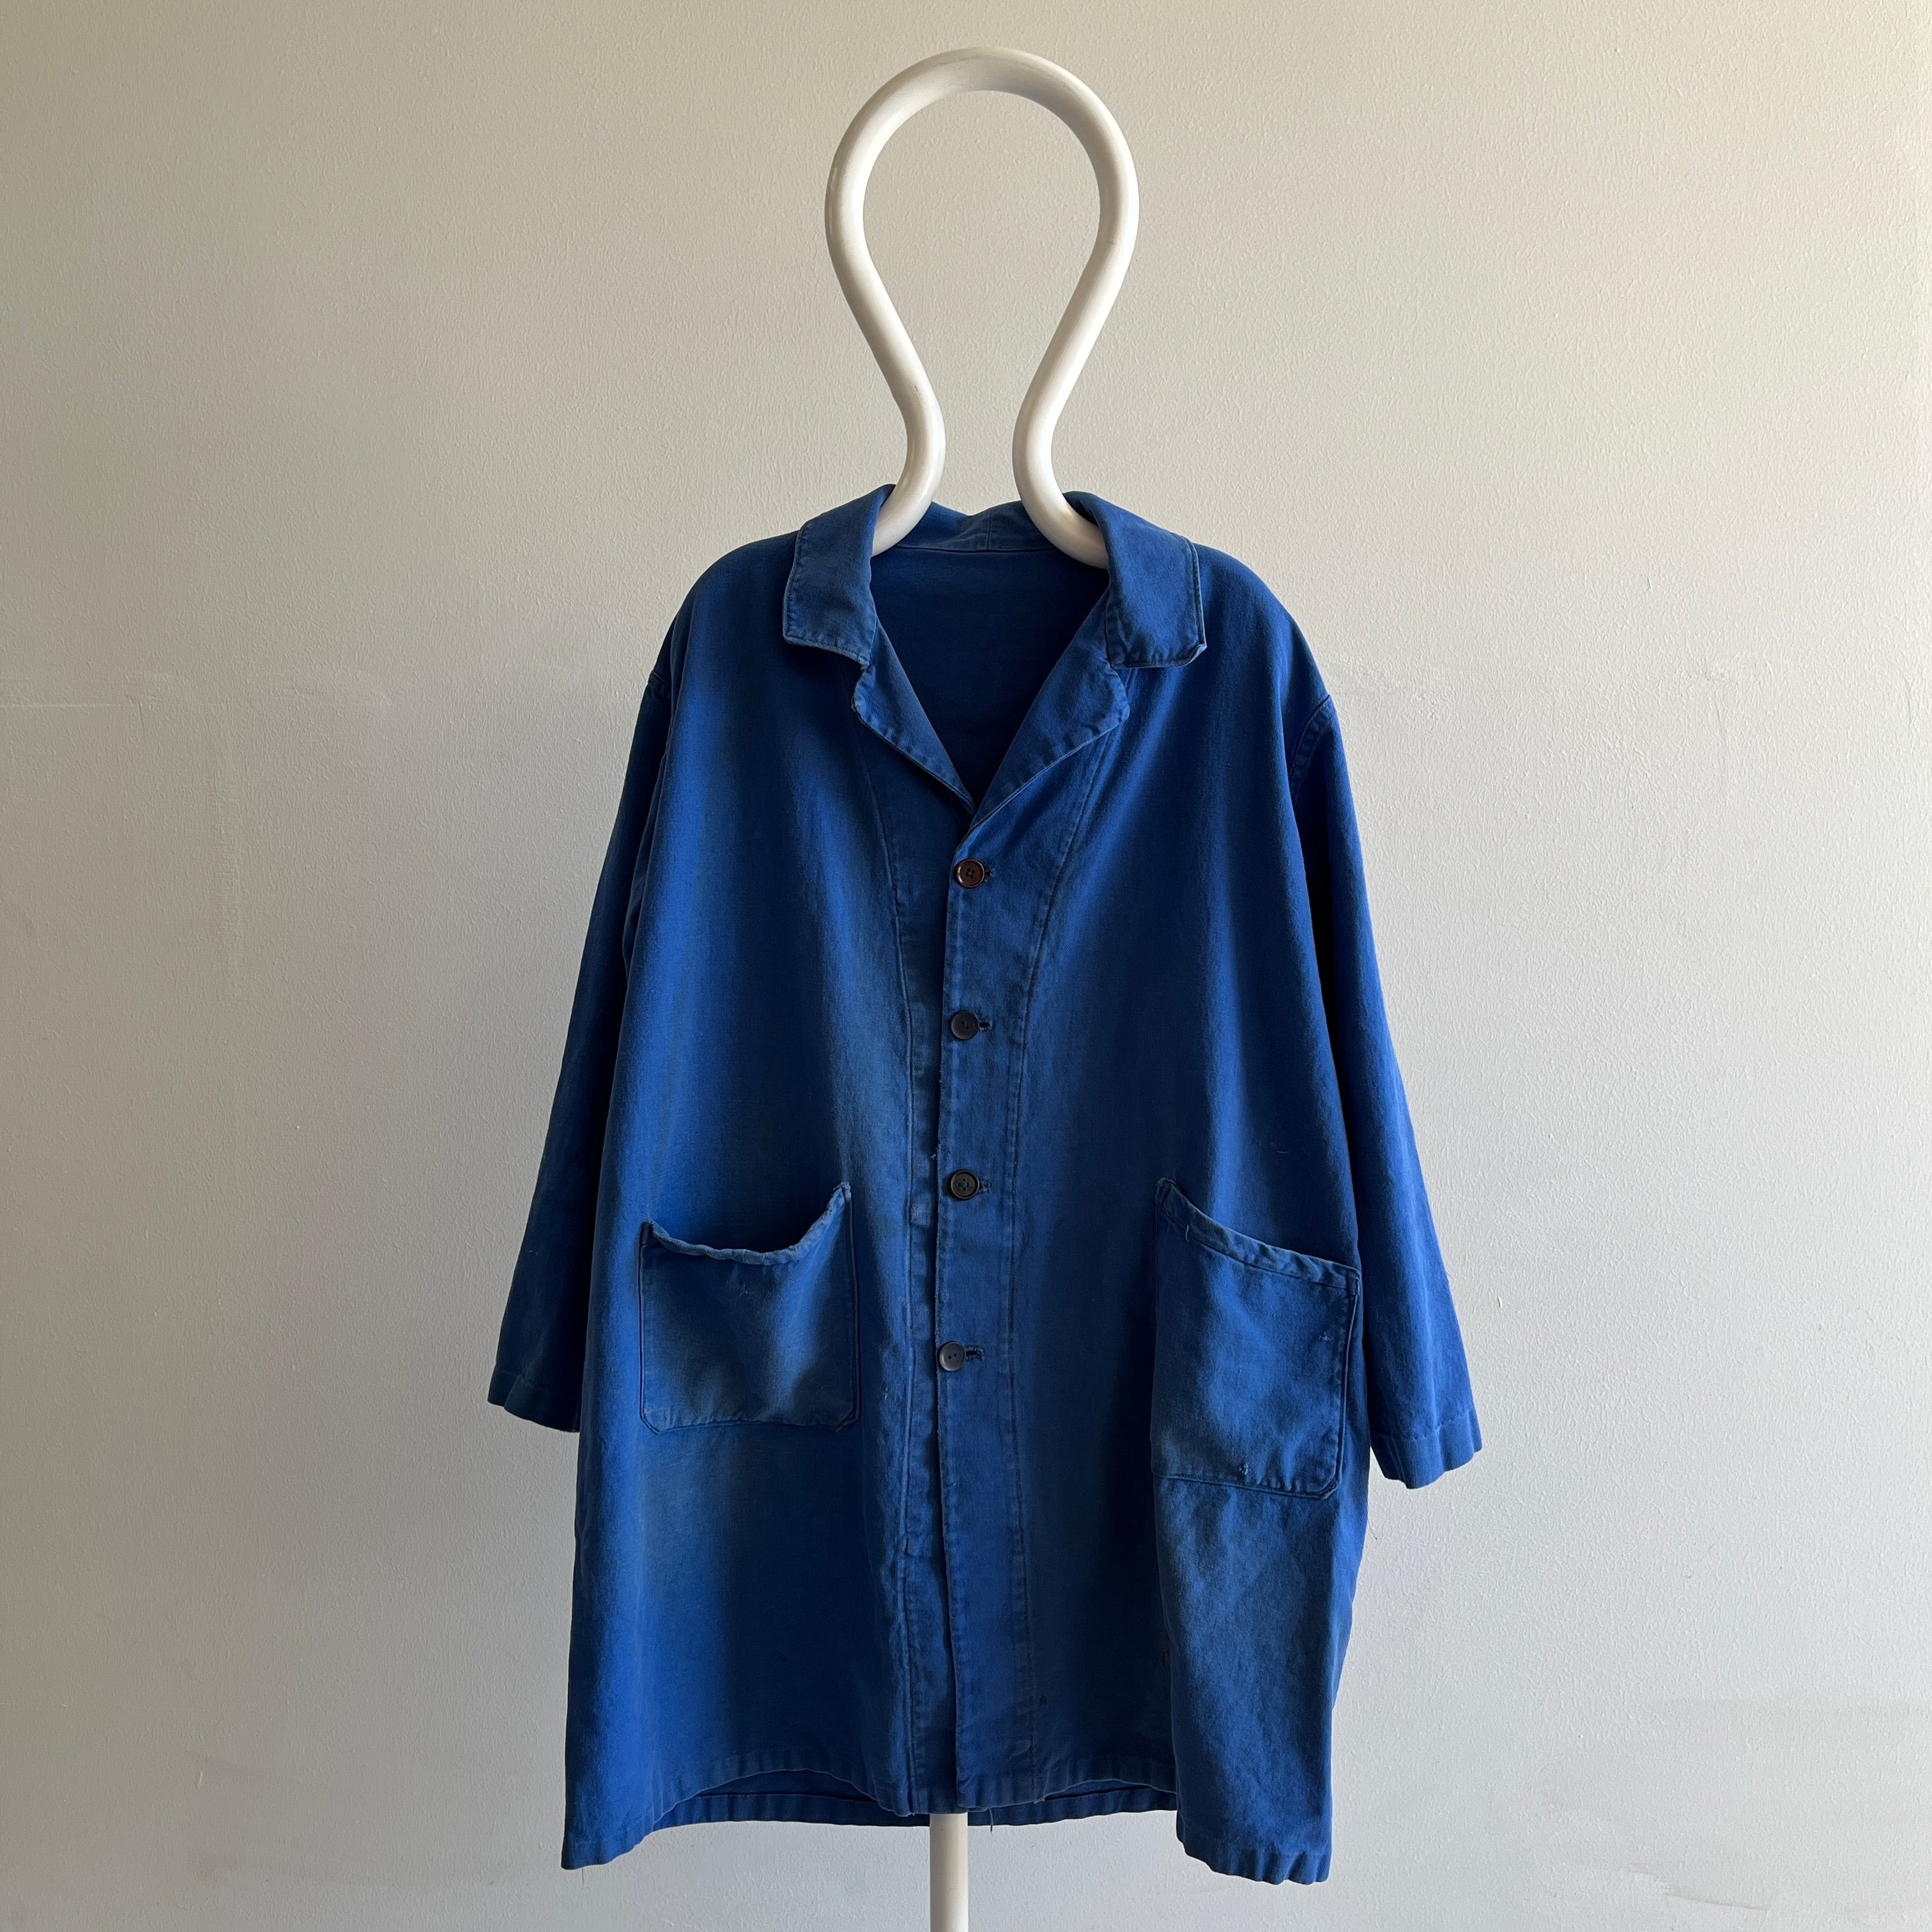 Manteau de corvée en coton des peintres français des années 1970